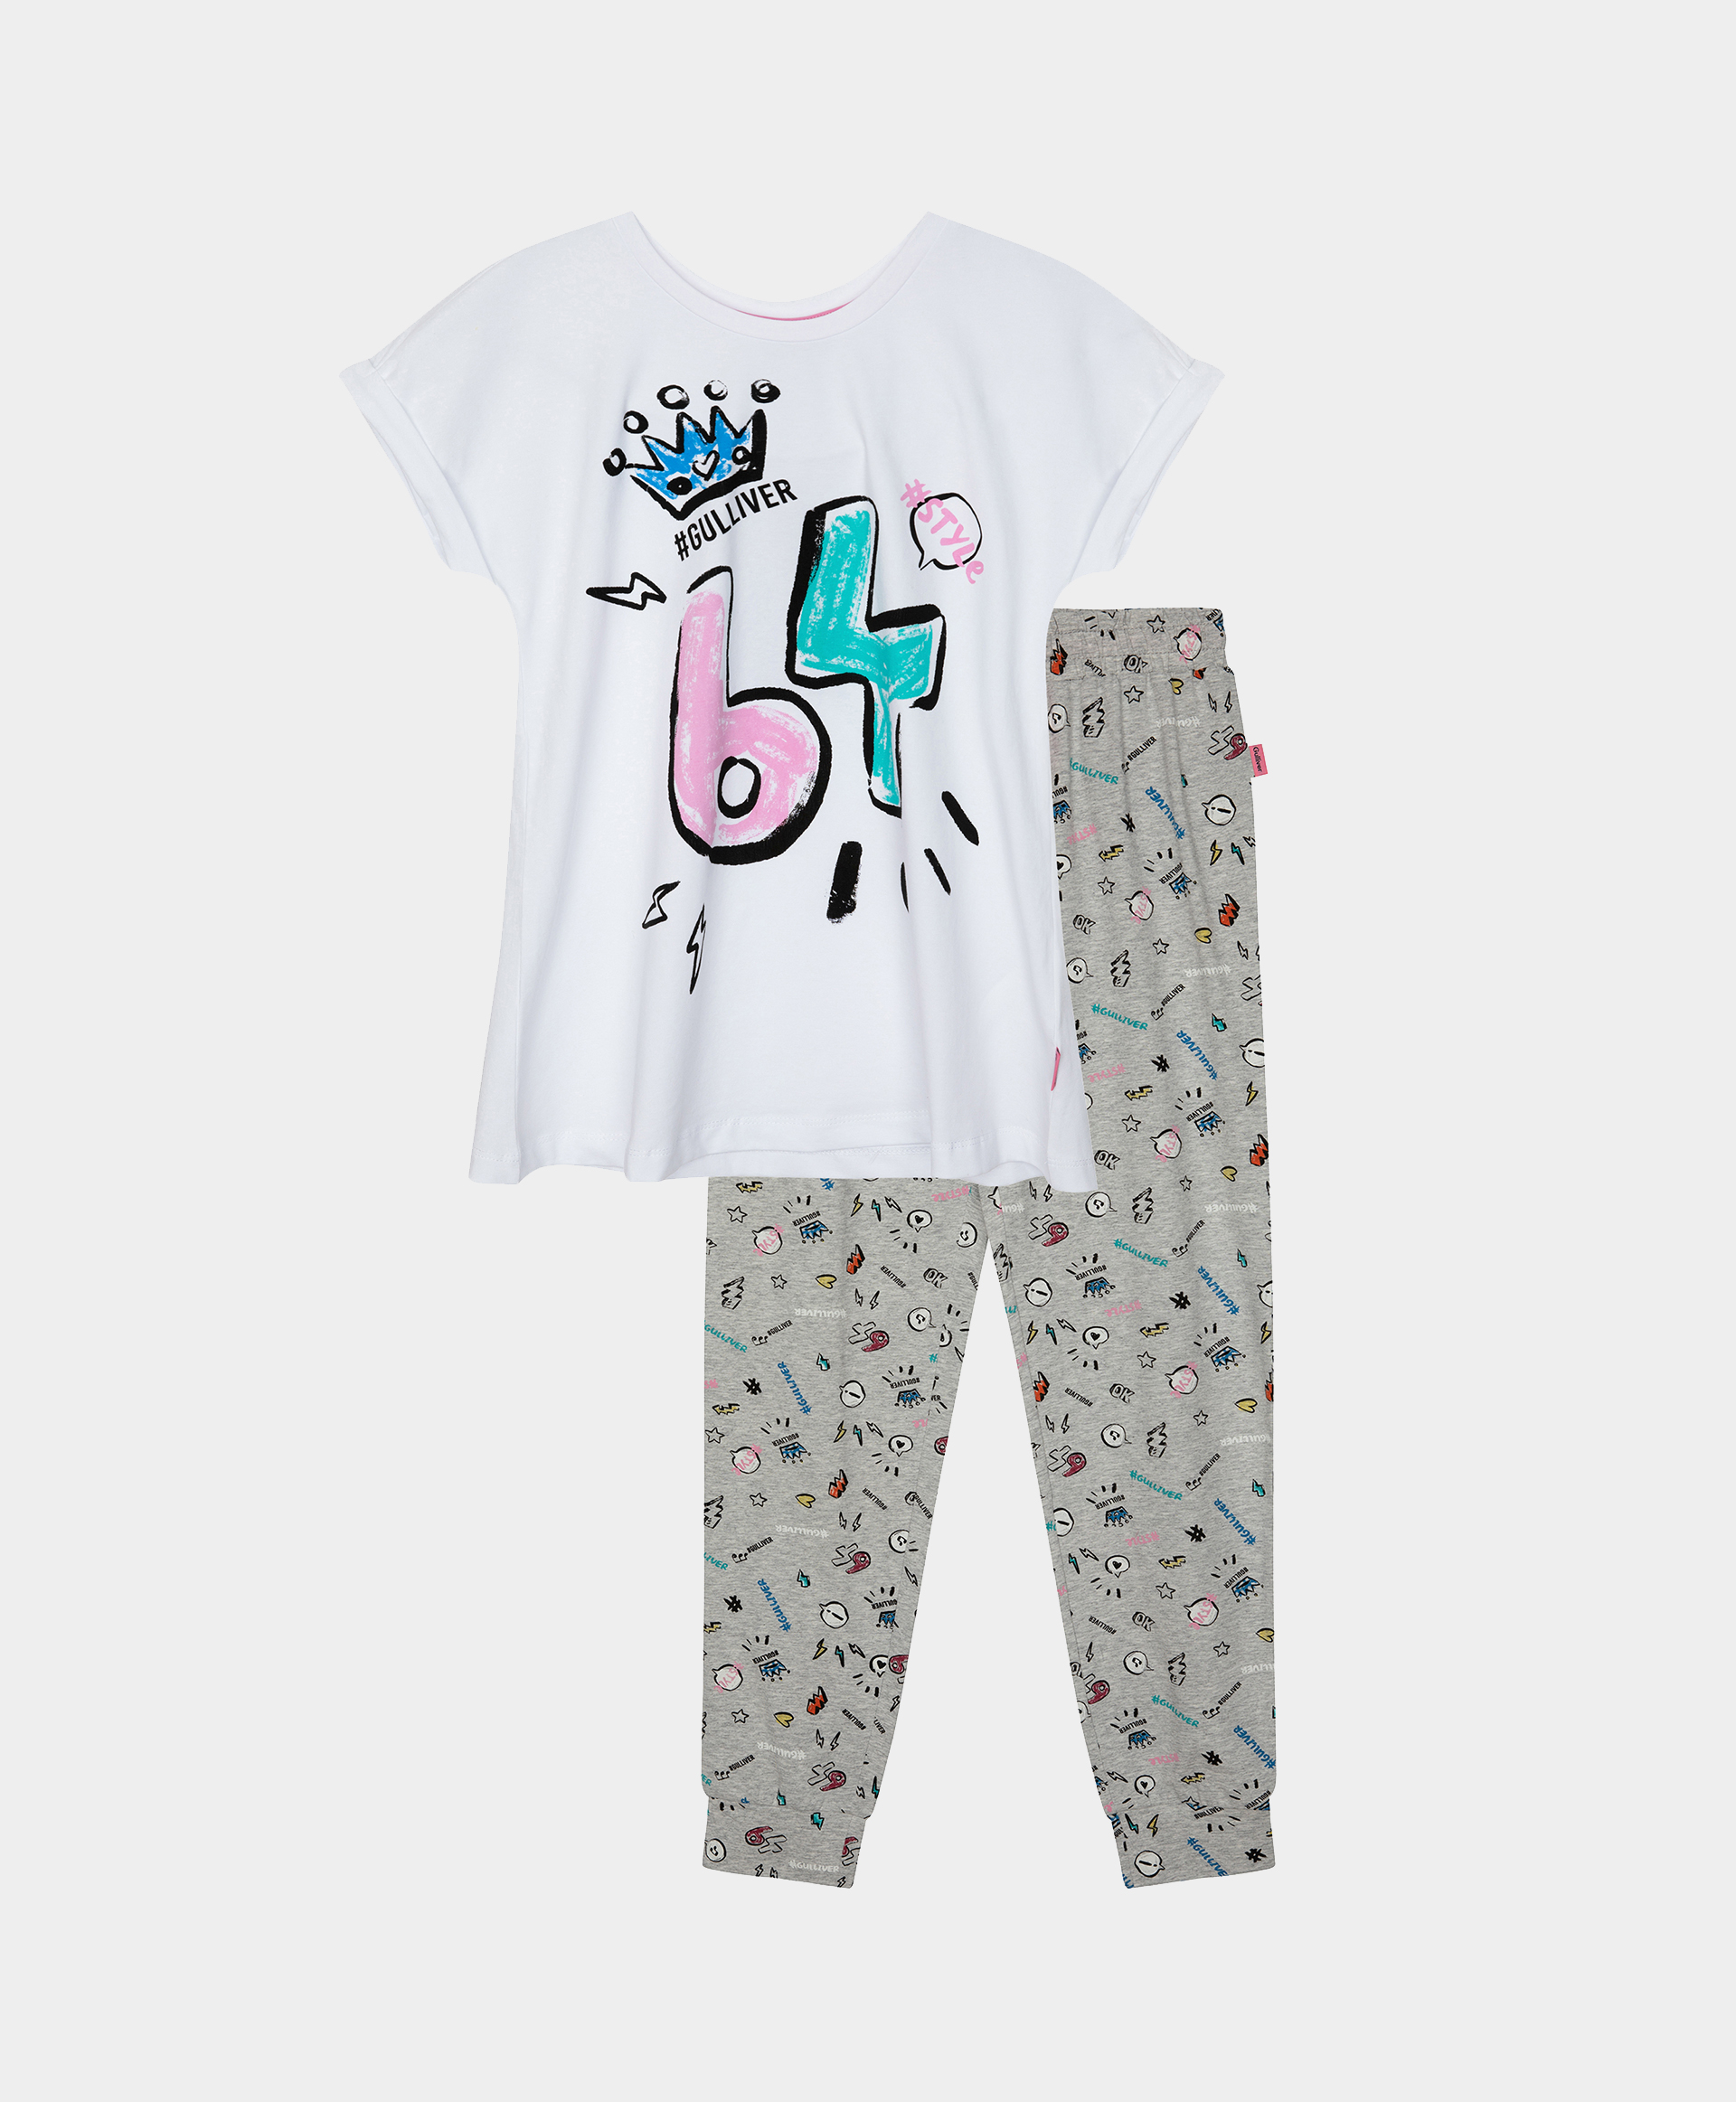 Пижама с принтом Gulliver 12100GC9701, размер 146-152, цвет мультицвет